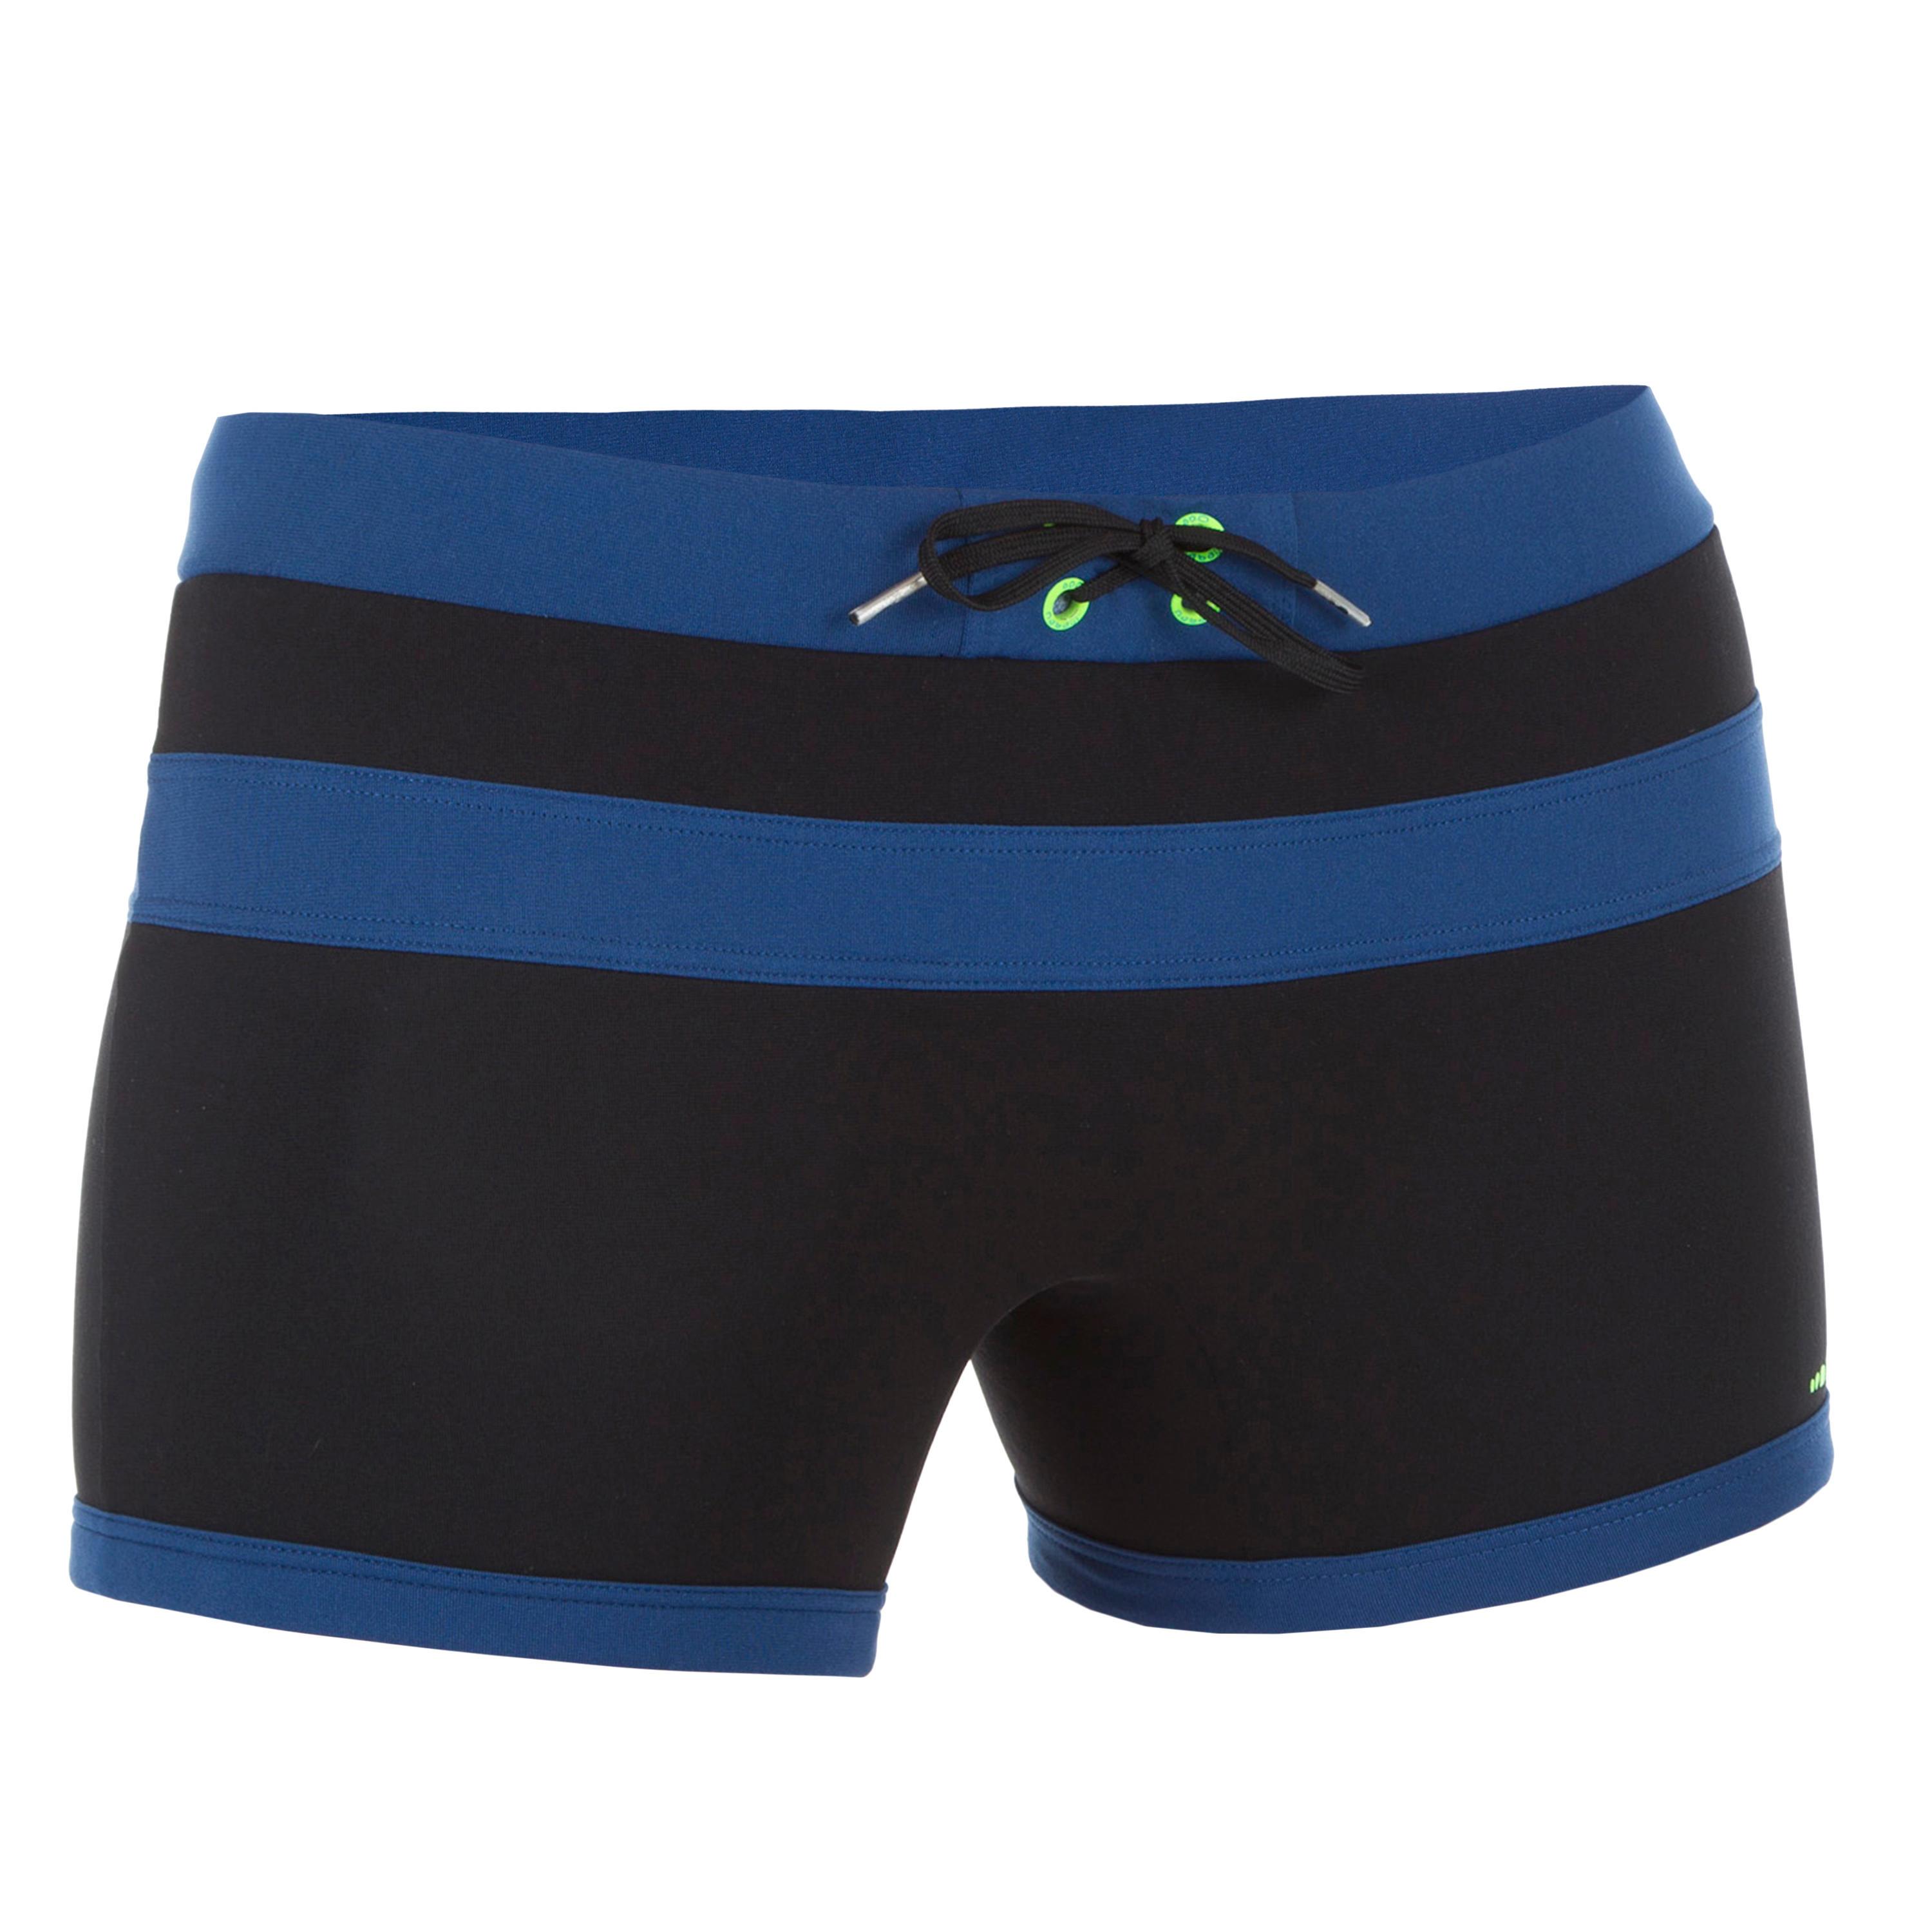 [ด่วน!! โปรโมชั่นมีจำนวนจำกัด] กางเกงว่ายน้ำทรงบ็อกเซอร์สำหรับผู้ชายรุ่น 100 (สีดำ INDIGO) สำหรับ ว่ายน้ำ